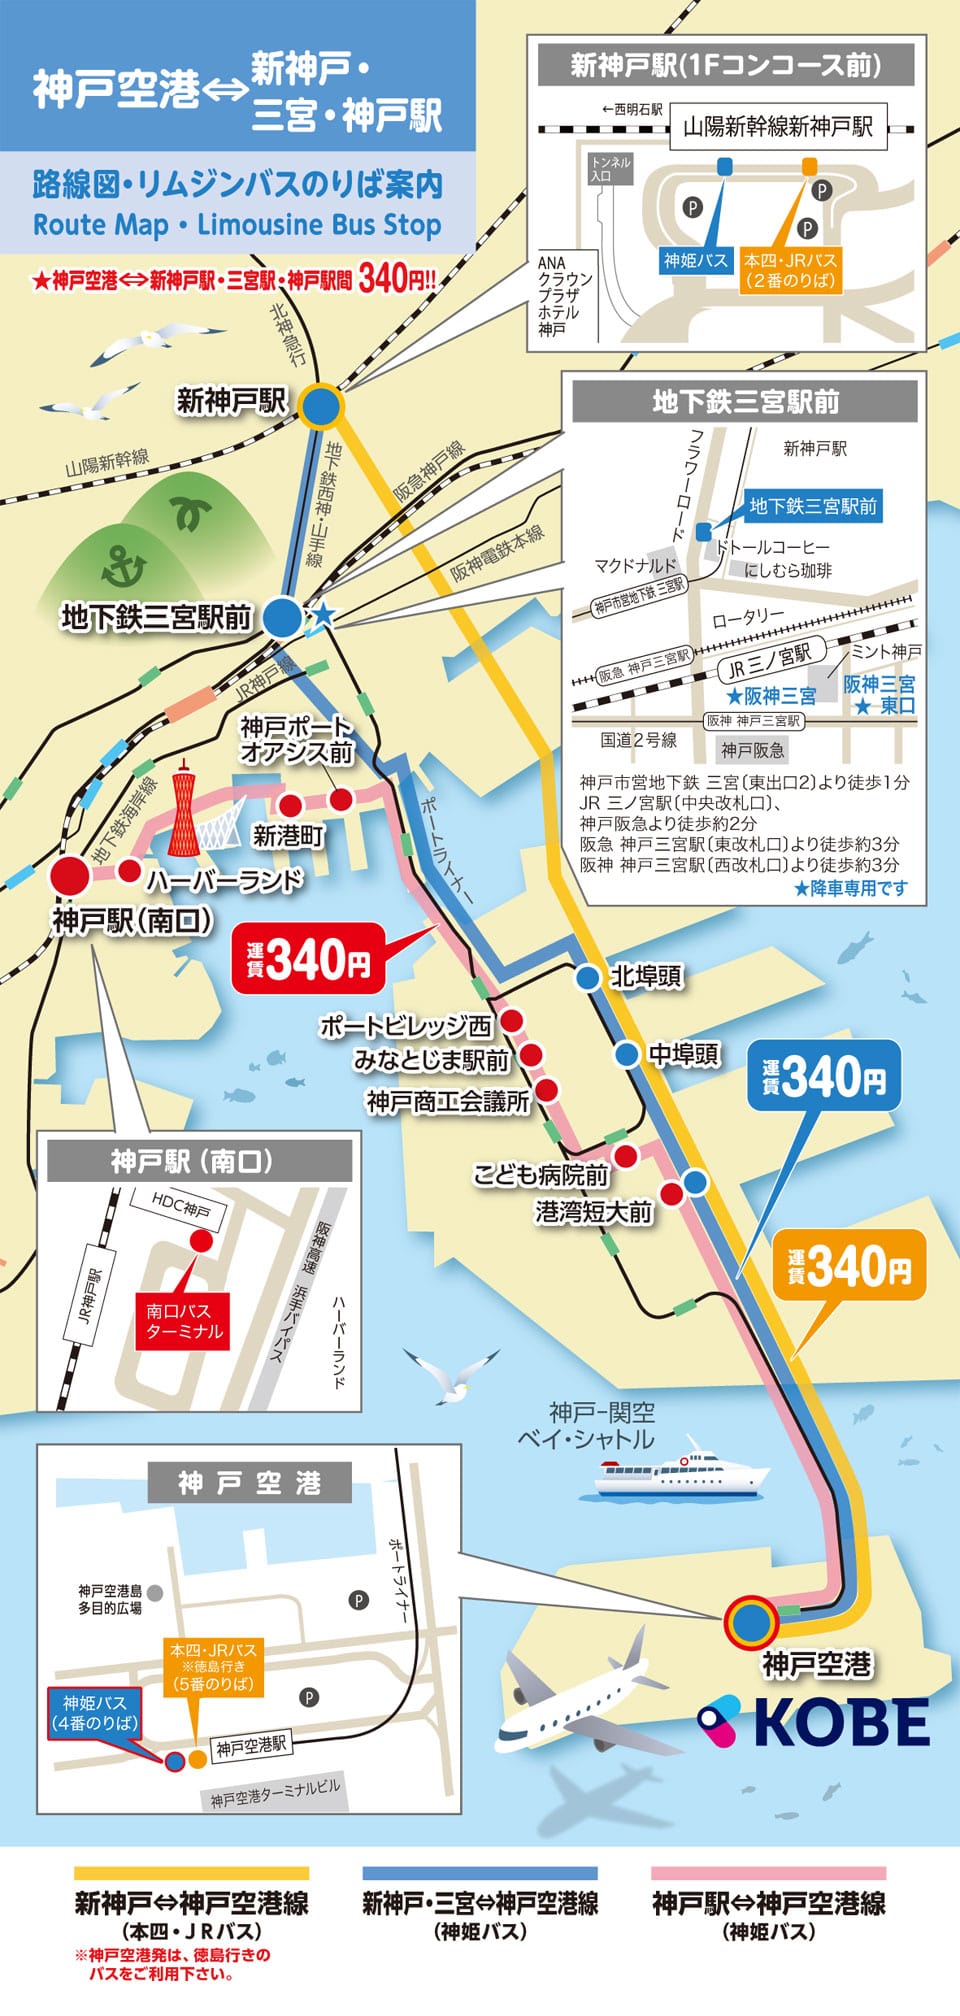 神戶關西機場海上高速船Bay Shuttle(折扣船票500日幣,搭車位置,購買地點)